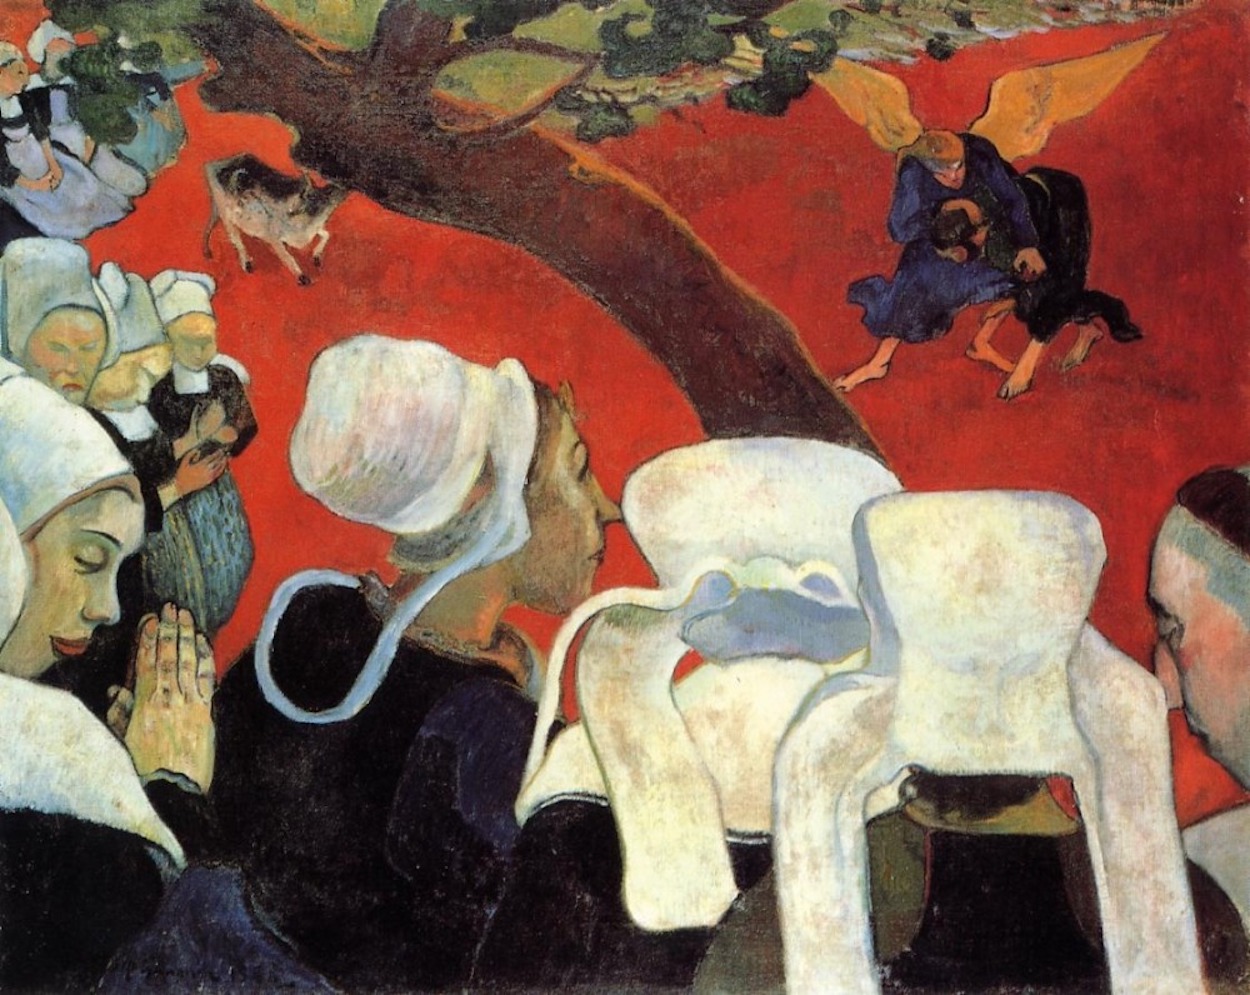 La Vision Après le Sermon by Paul Gauguin - 1888 - 74.4 x 93.1 cm 